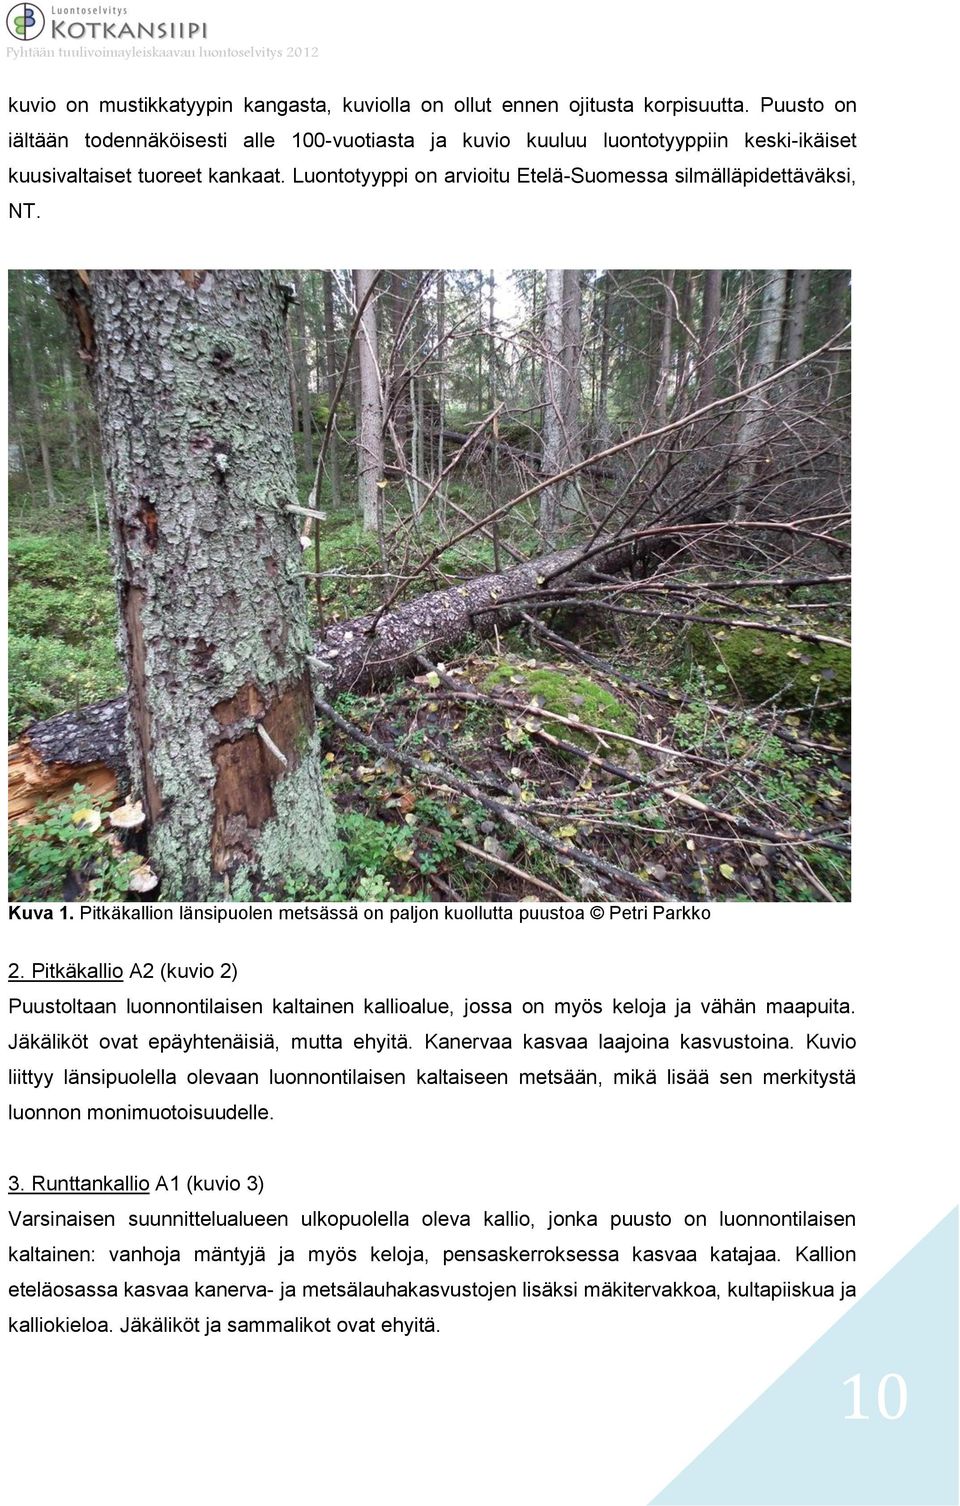 Kuva 1. Pitkäkallion länsipuolen metsässä on paljon kuollutta puustoa Petri Parkko 2. Pitkäkallio A2 (kuvio 2) Puustoltaan luonnontilaisen kaltainen kallioalue, jossa on myös keloja ja vähän maapuita.